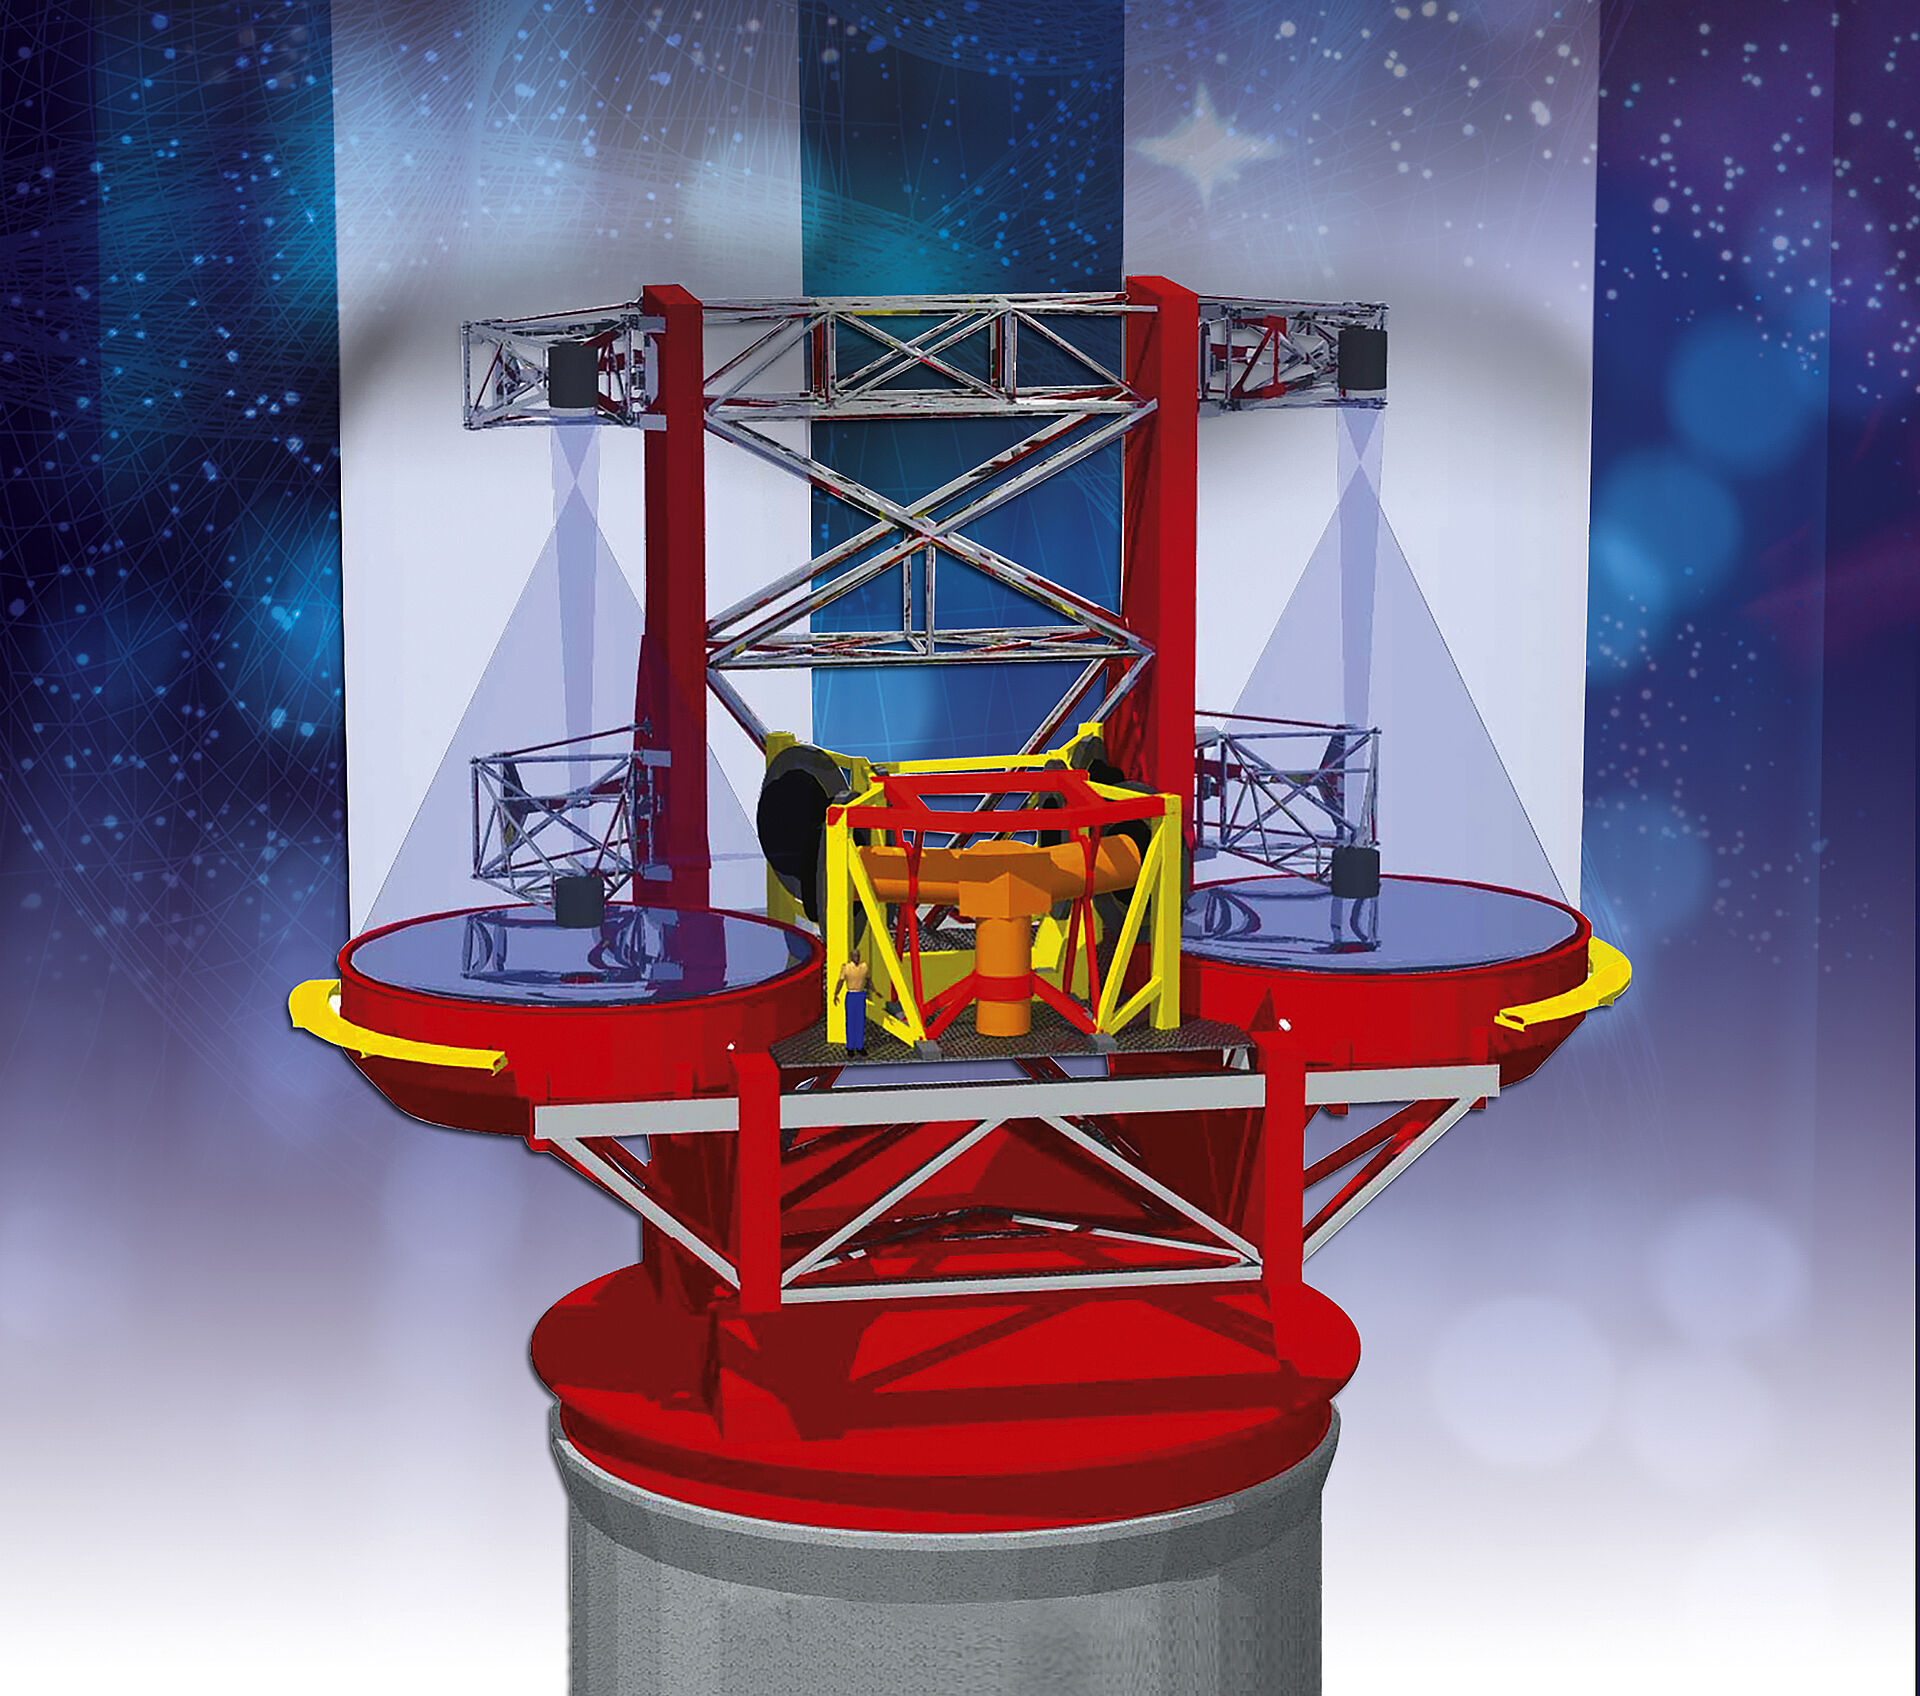 对世界上最大的"双筒望远镜"的运动控制技术小型化